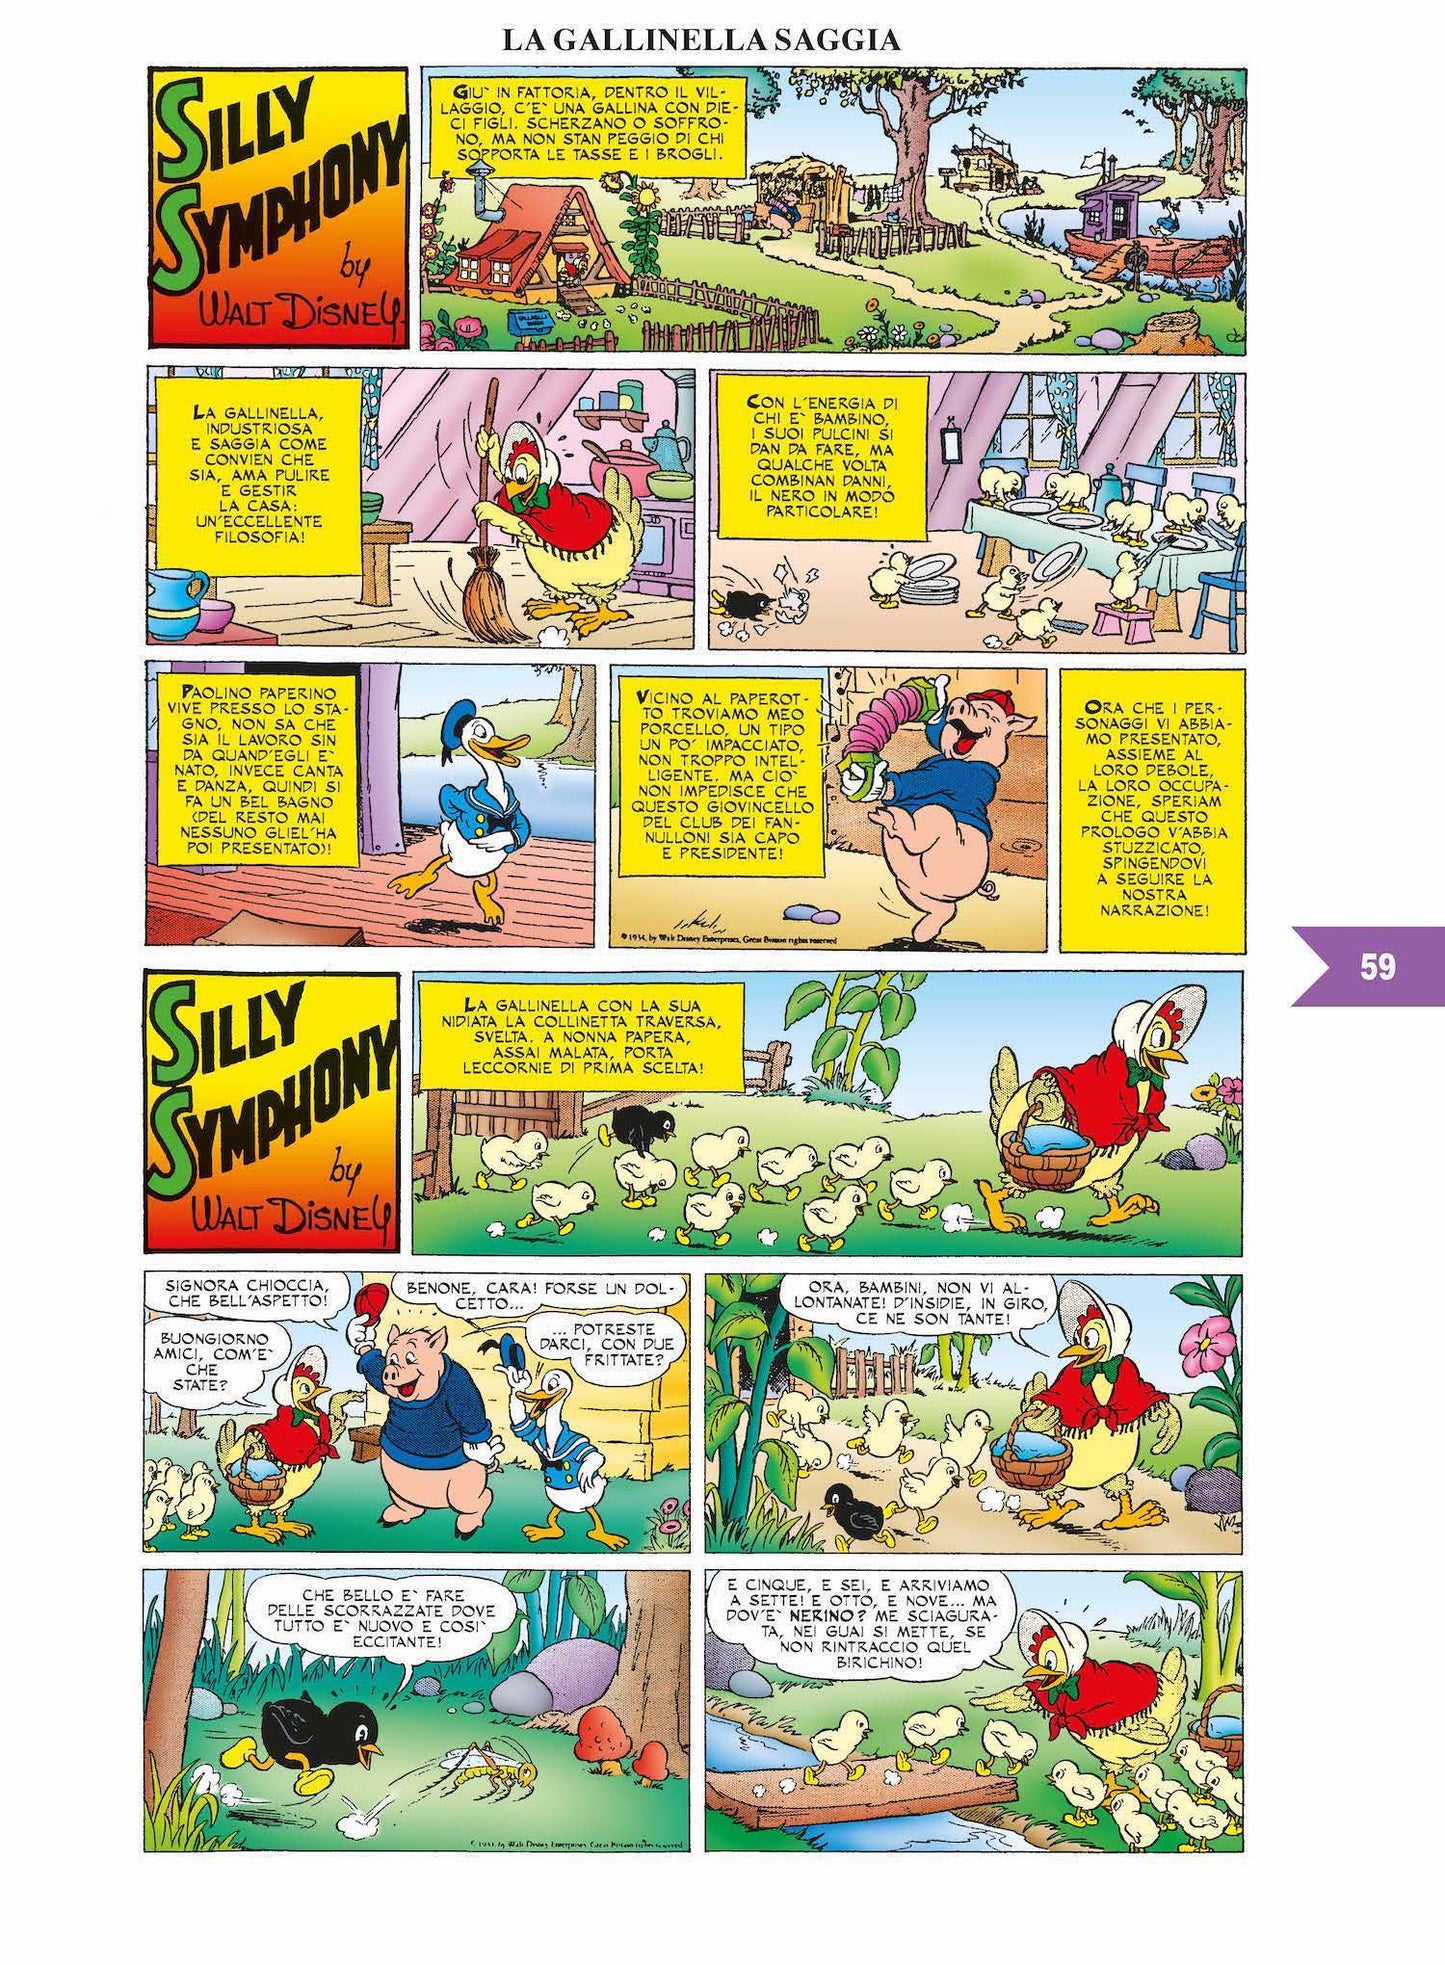 100 anni di storie a fumetti Disney100